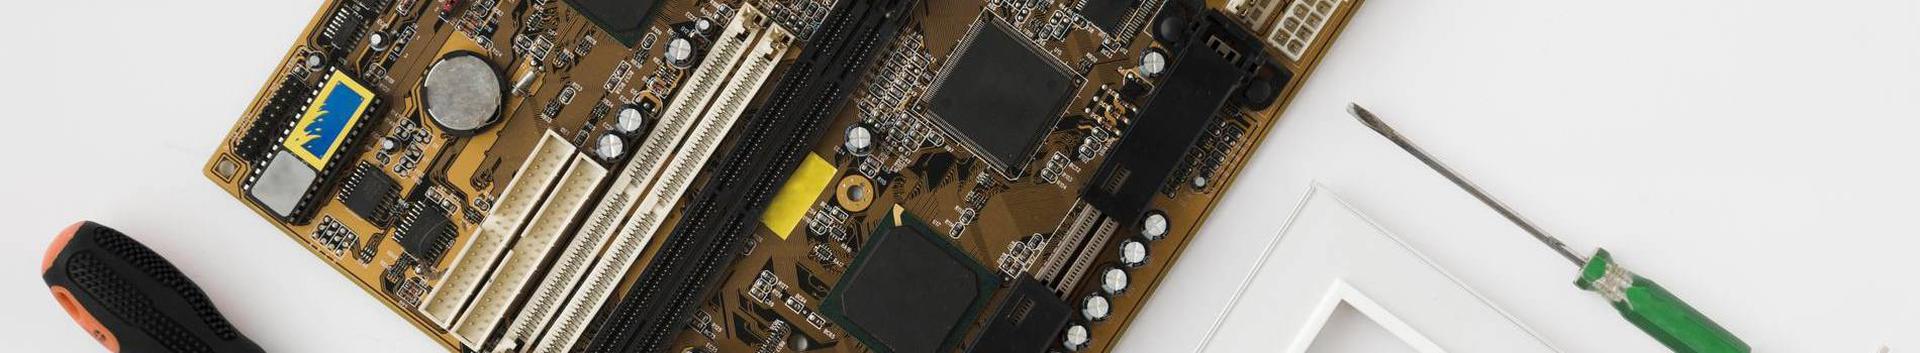 Computer Repair, Computer maintenance and repair